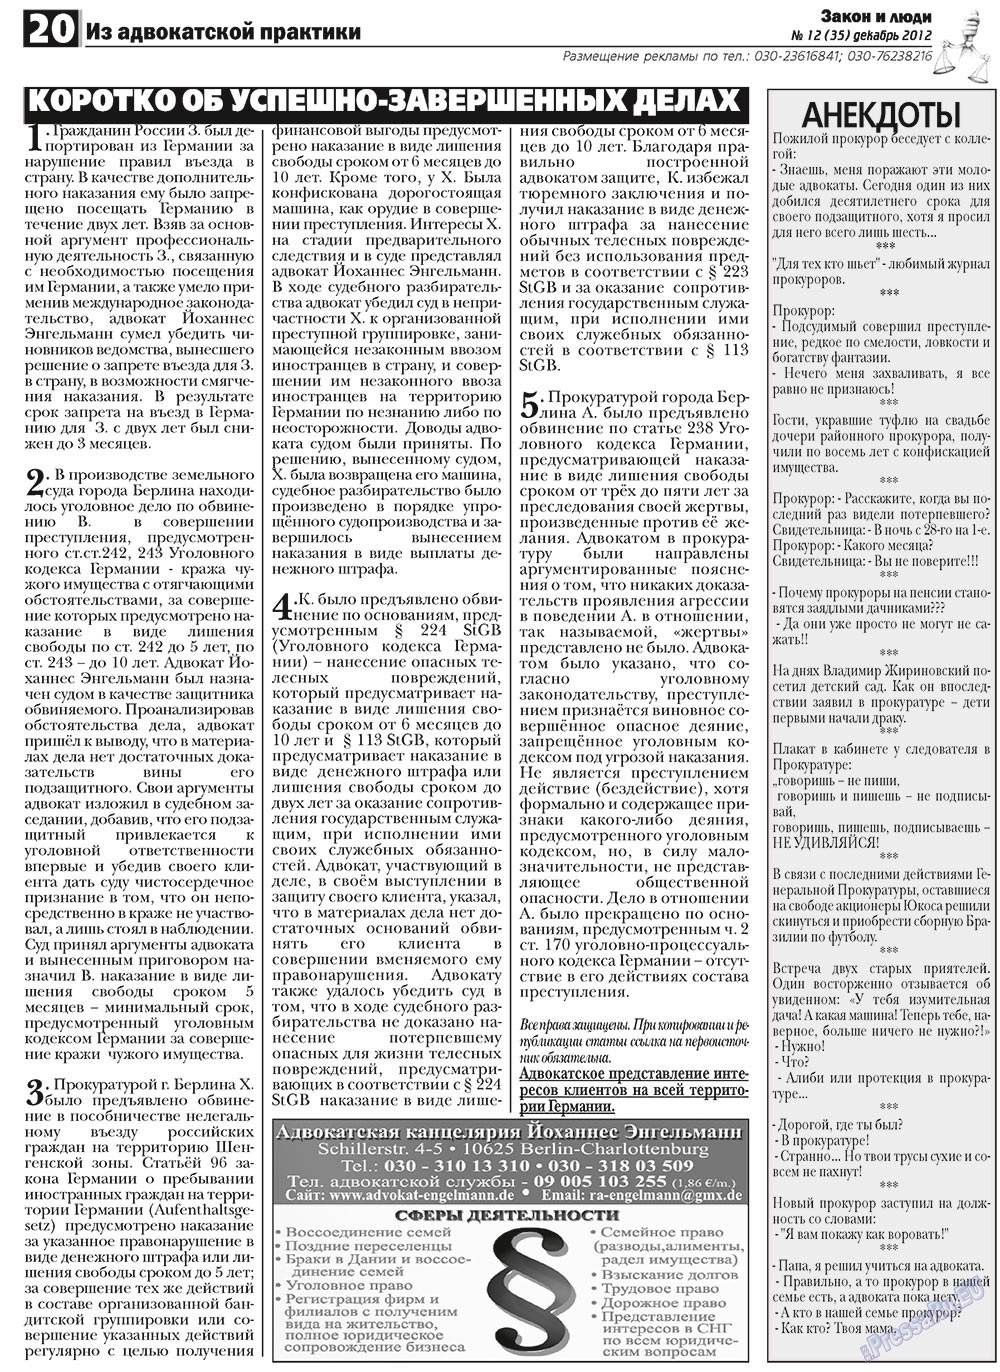 Закон и люди, газета. 2012 №12 стр.20